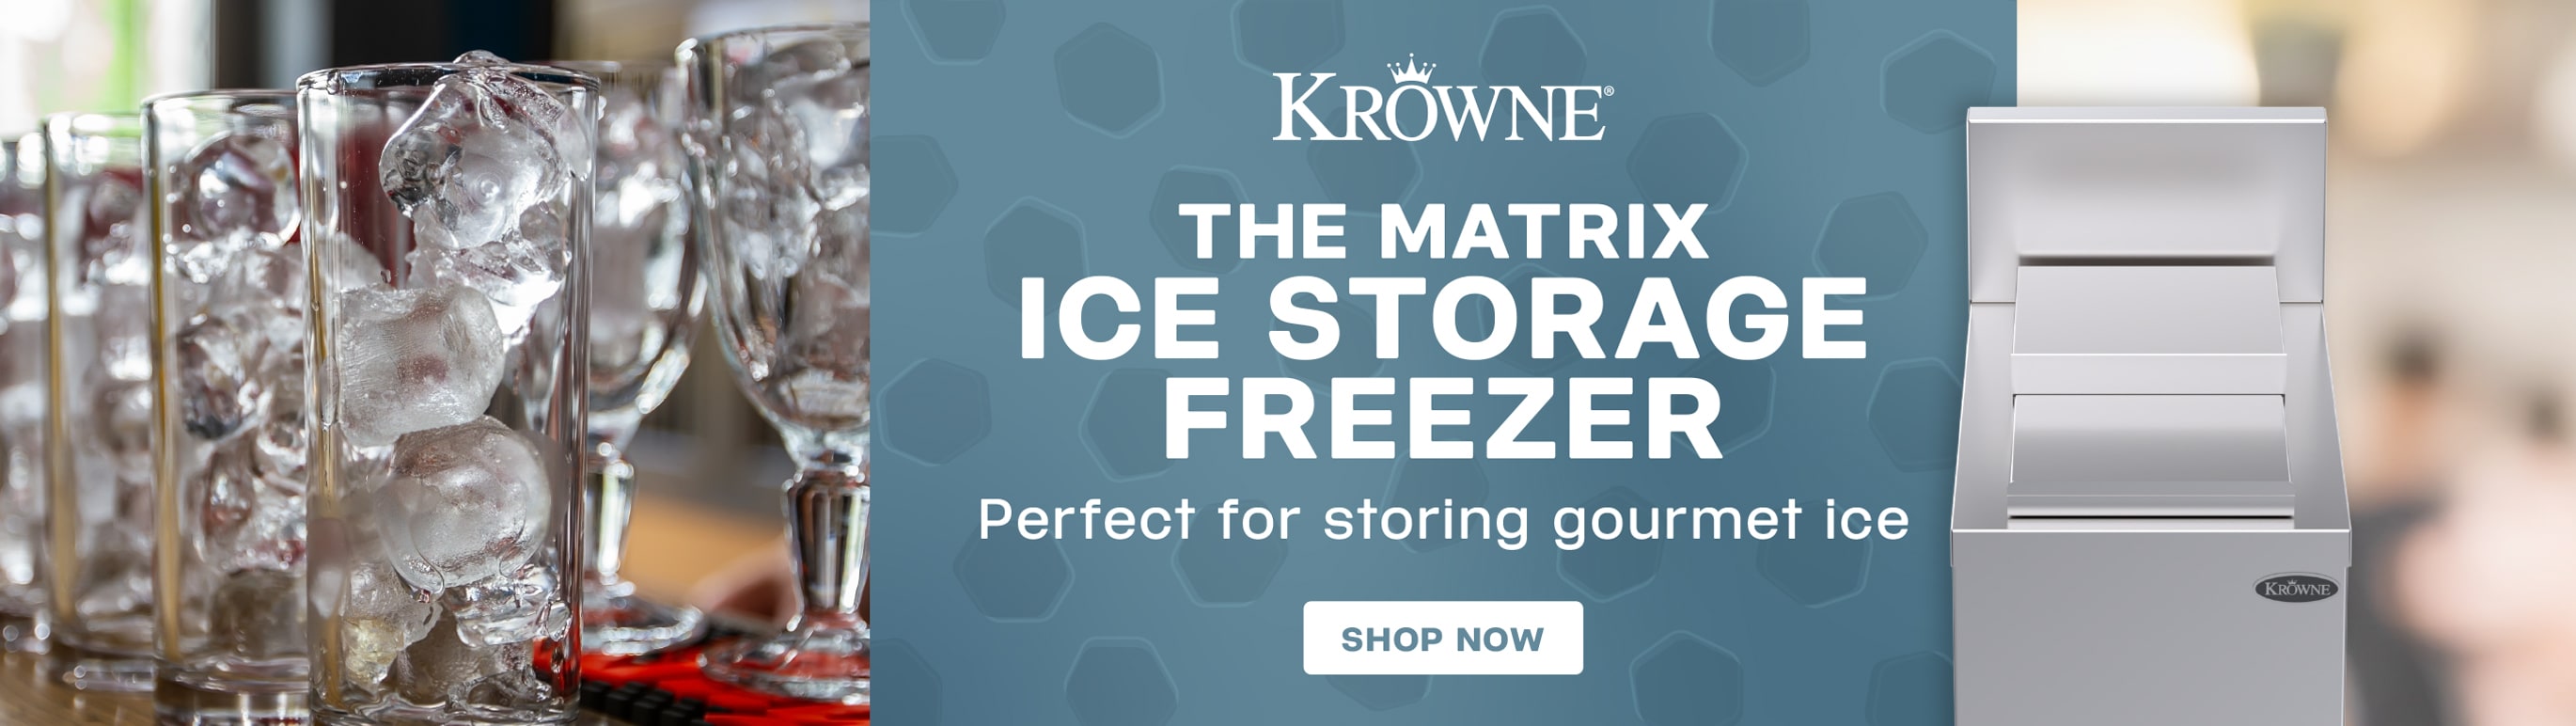 Krowne Ice Storage Freezer